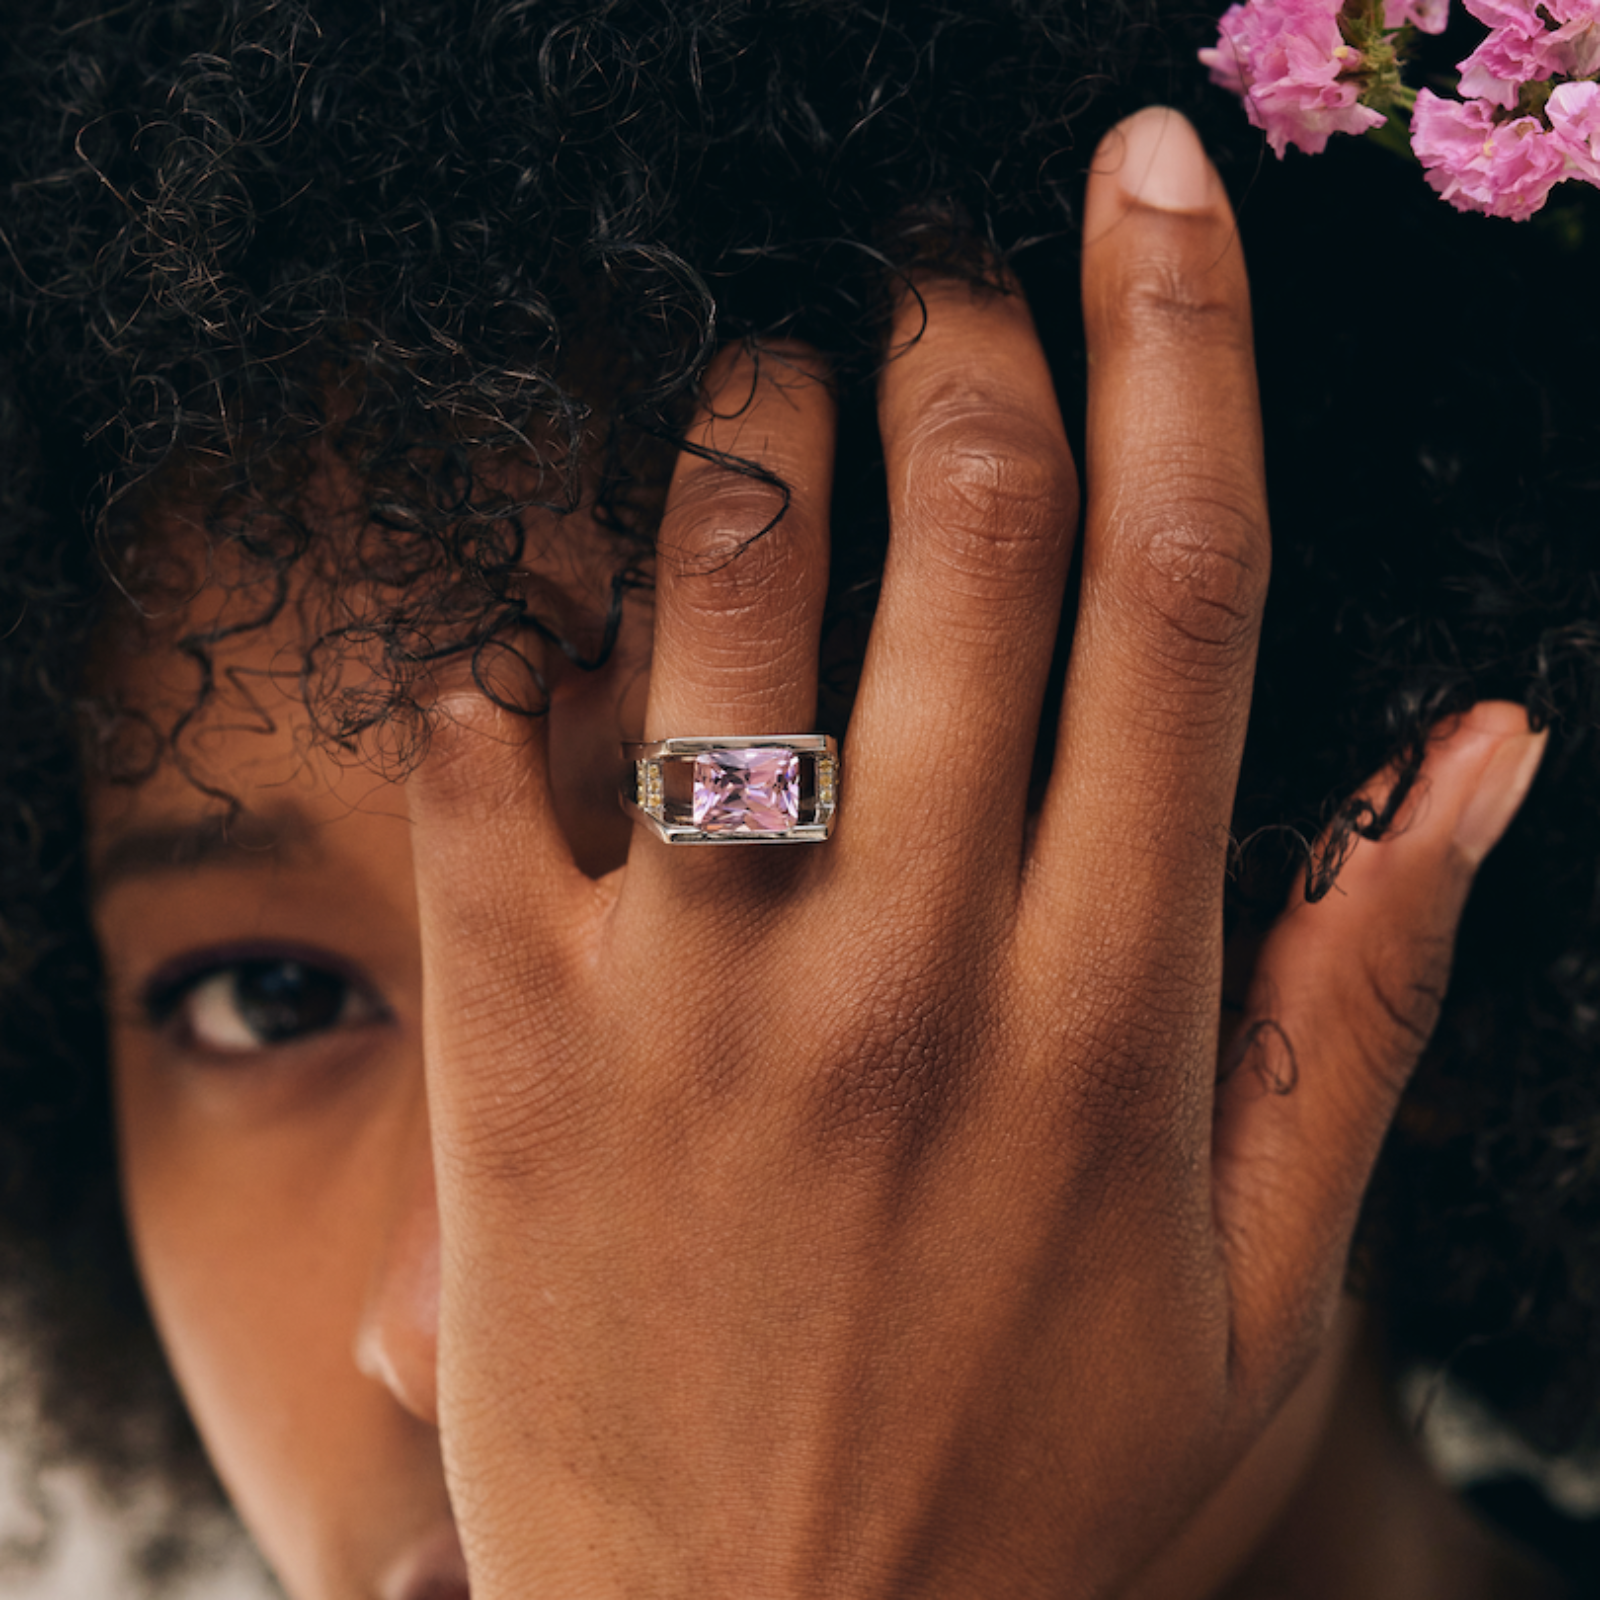 Pink quartz ring - La Trouvaille